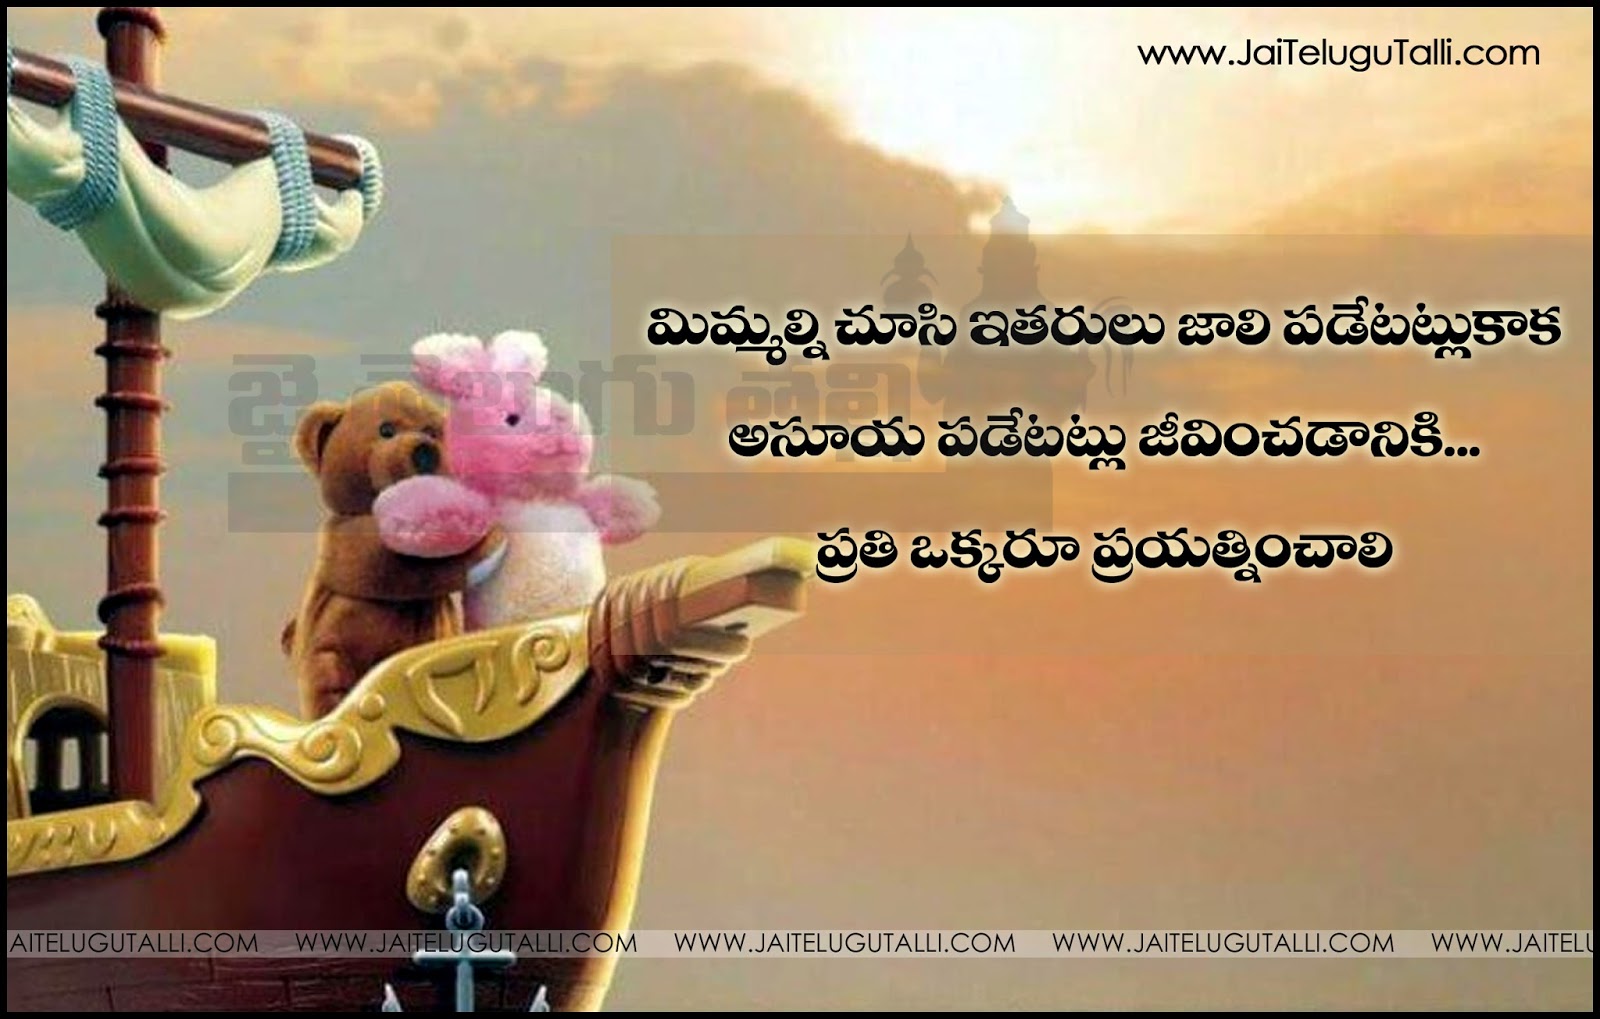 Imagenes De Life Inspirational Quotes In Telugu Images